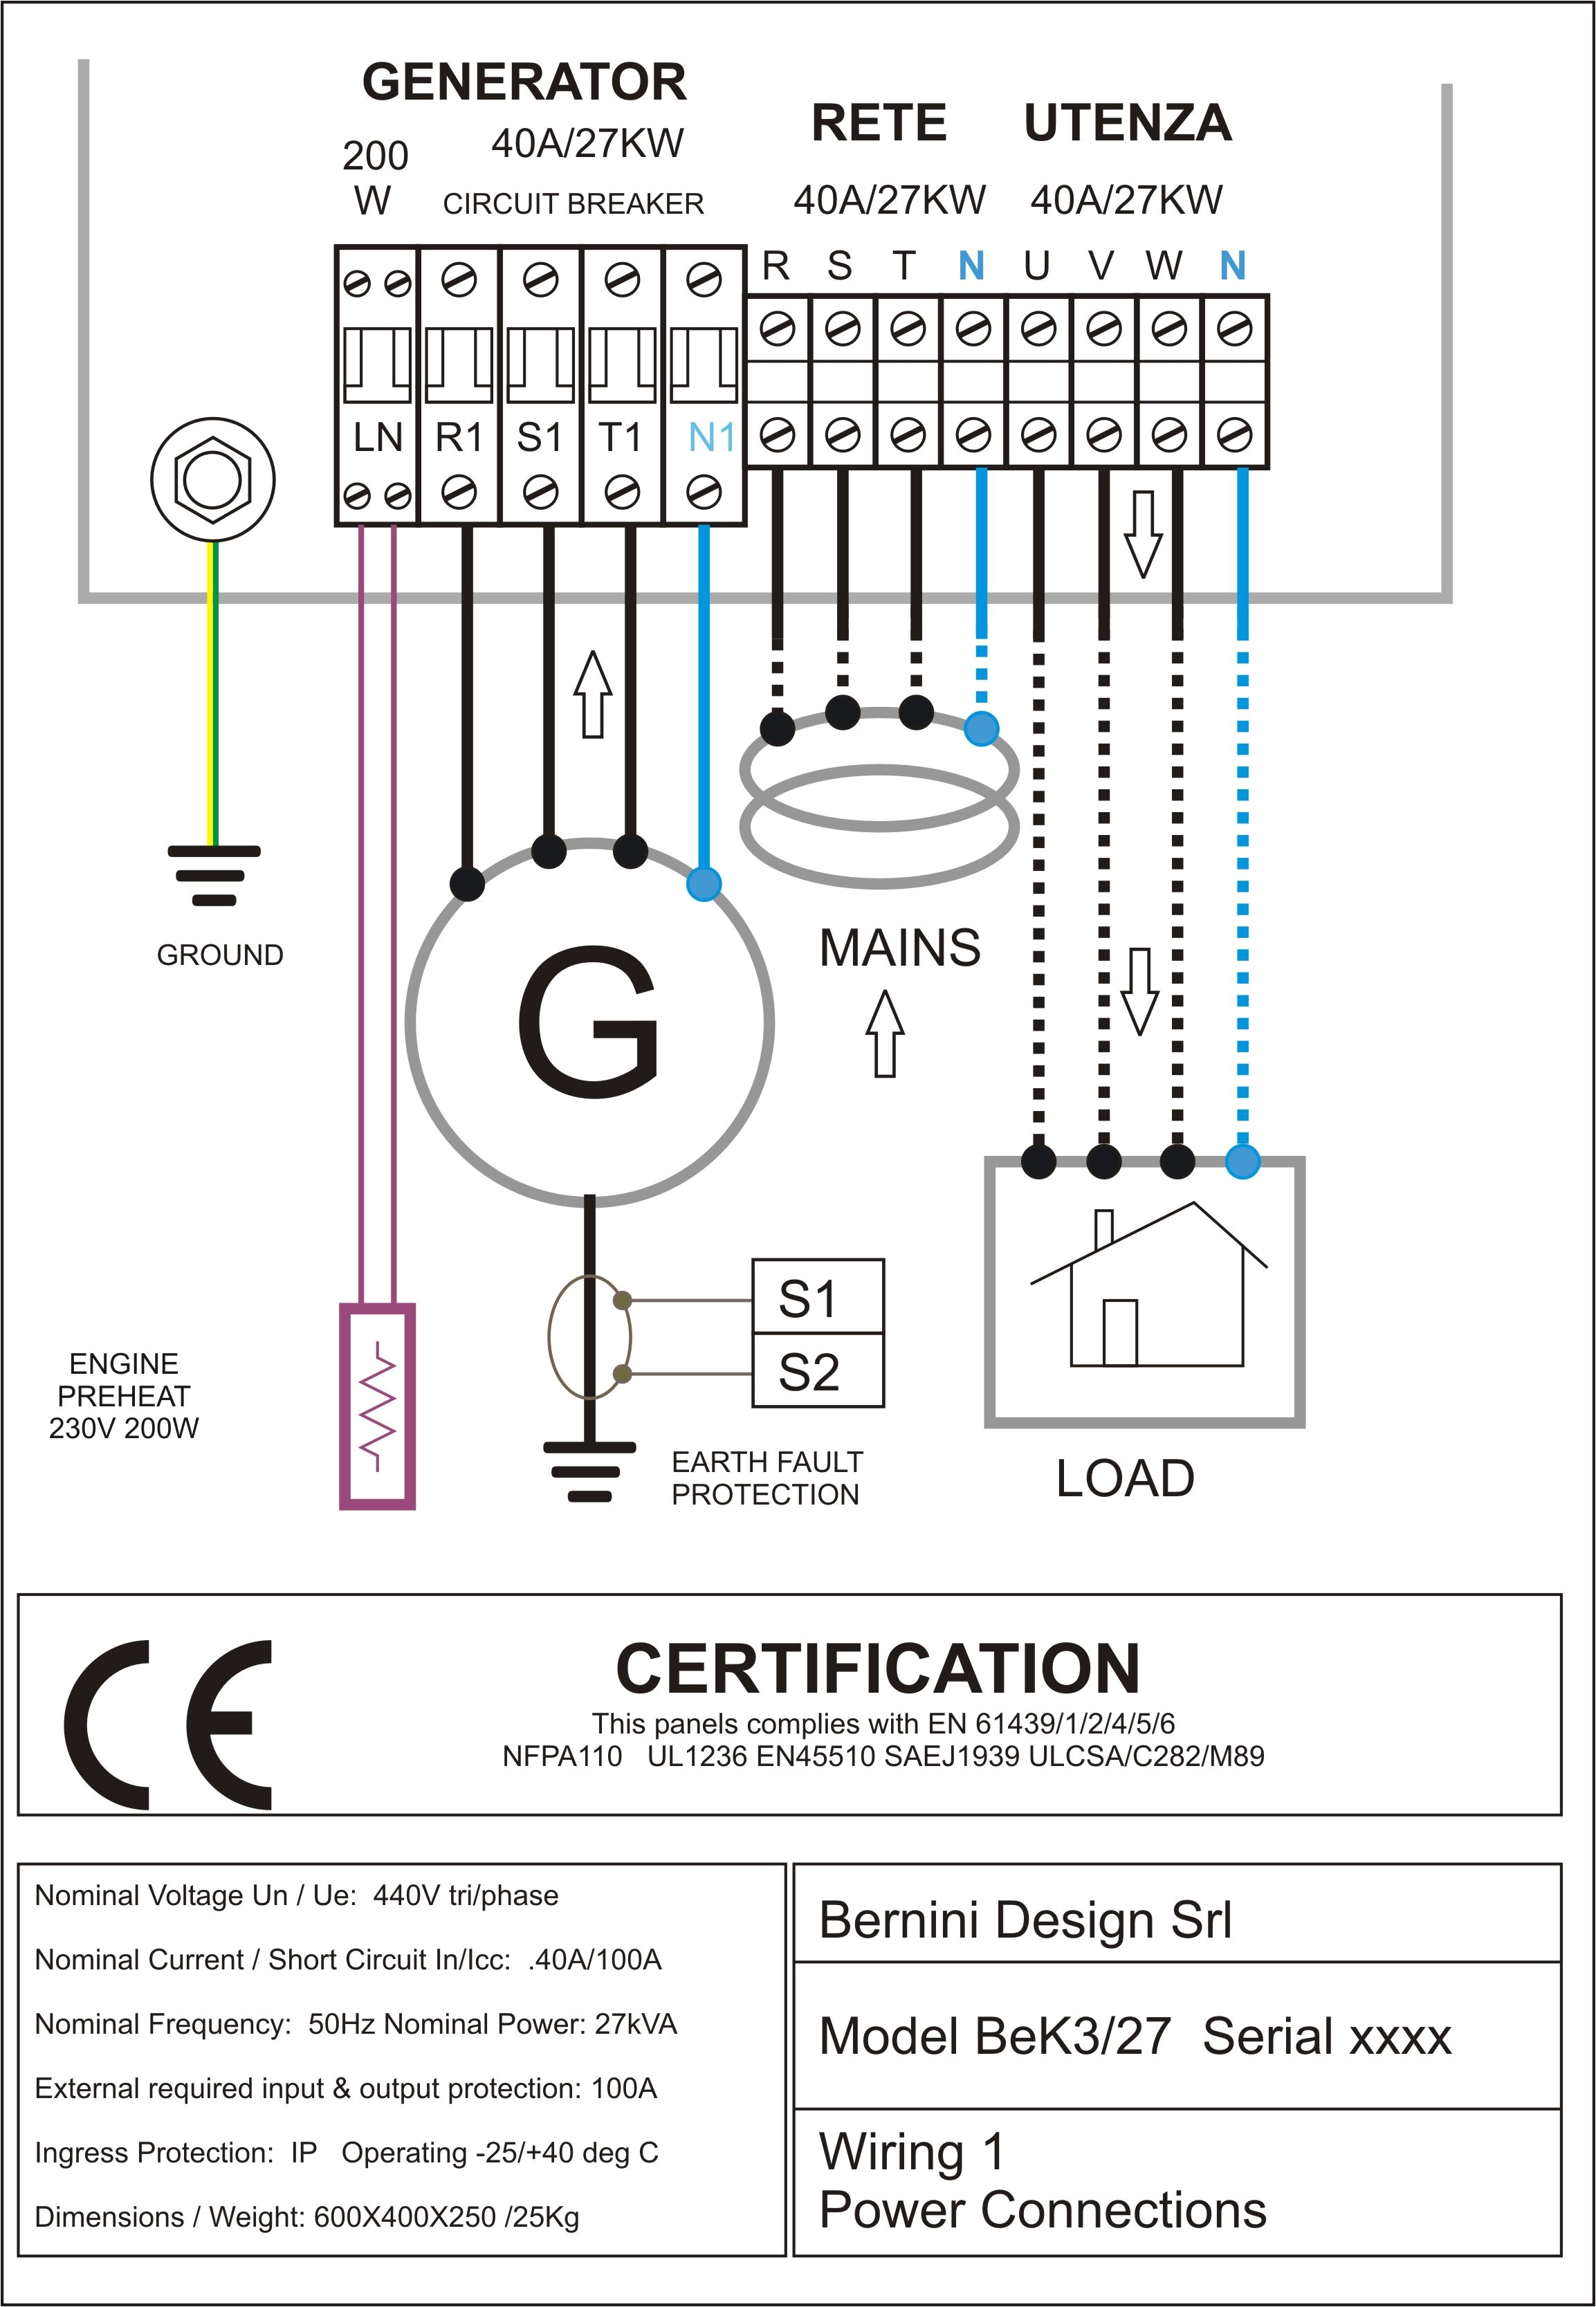 diesel generator control panel wiring diagram ac connections generator control panel wiring diagram pdf diesel generator